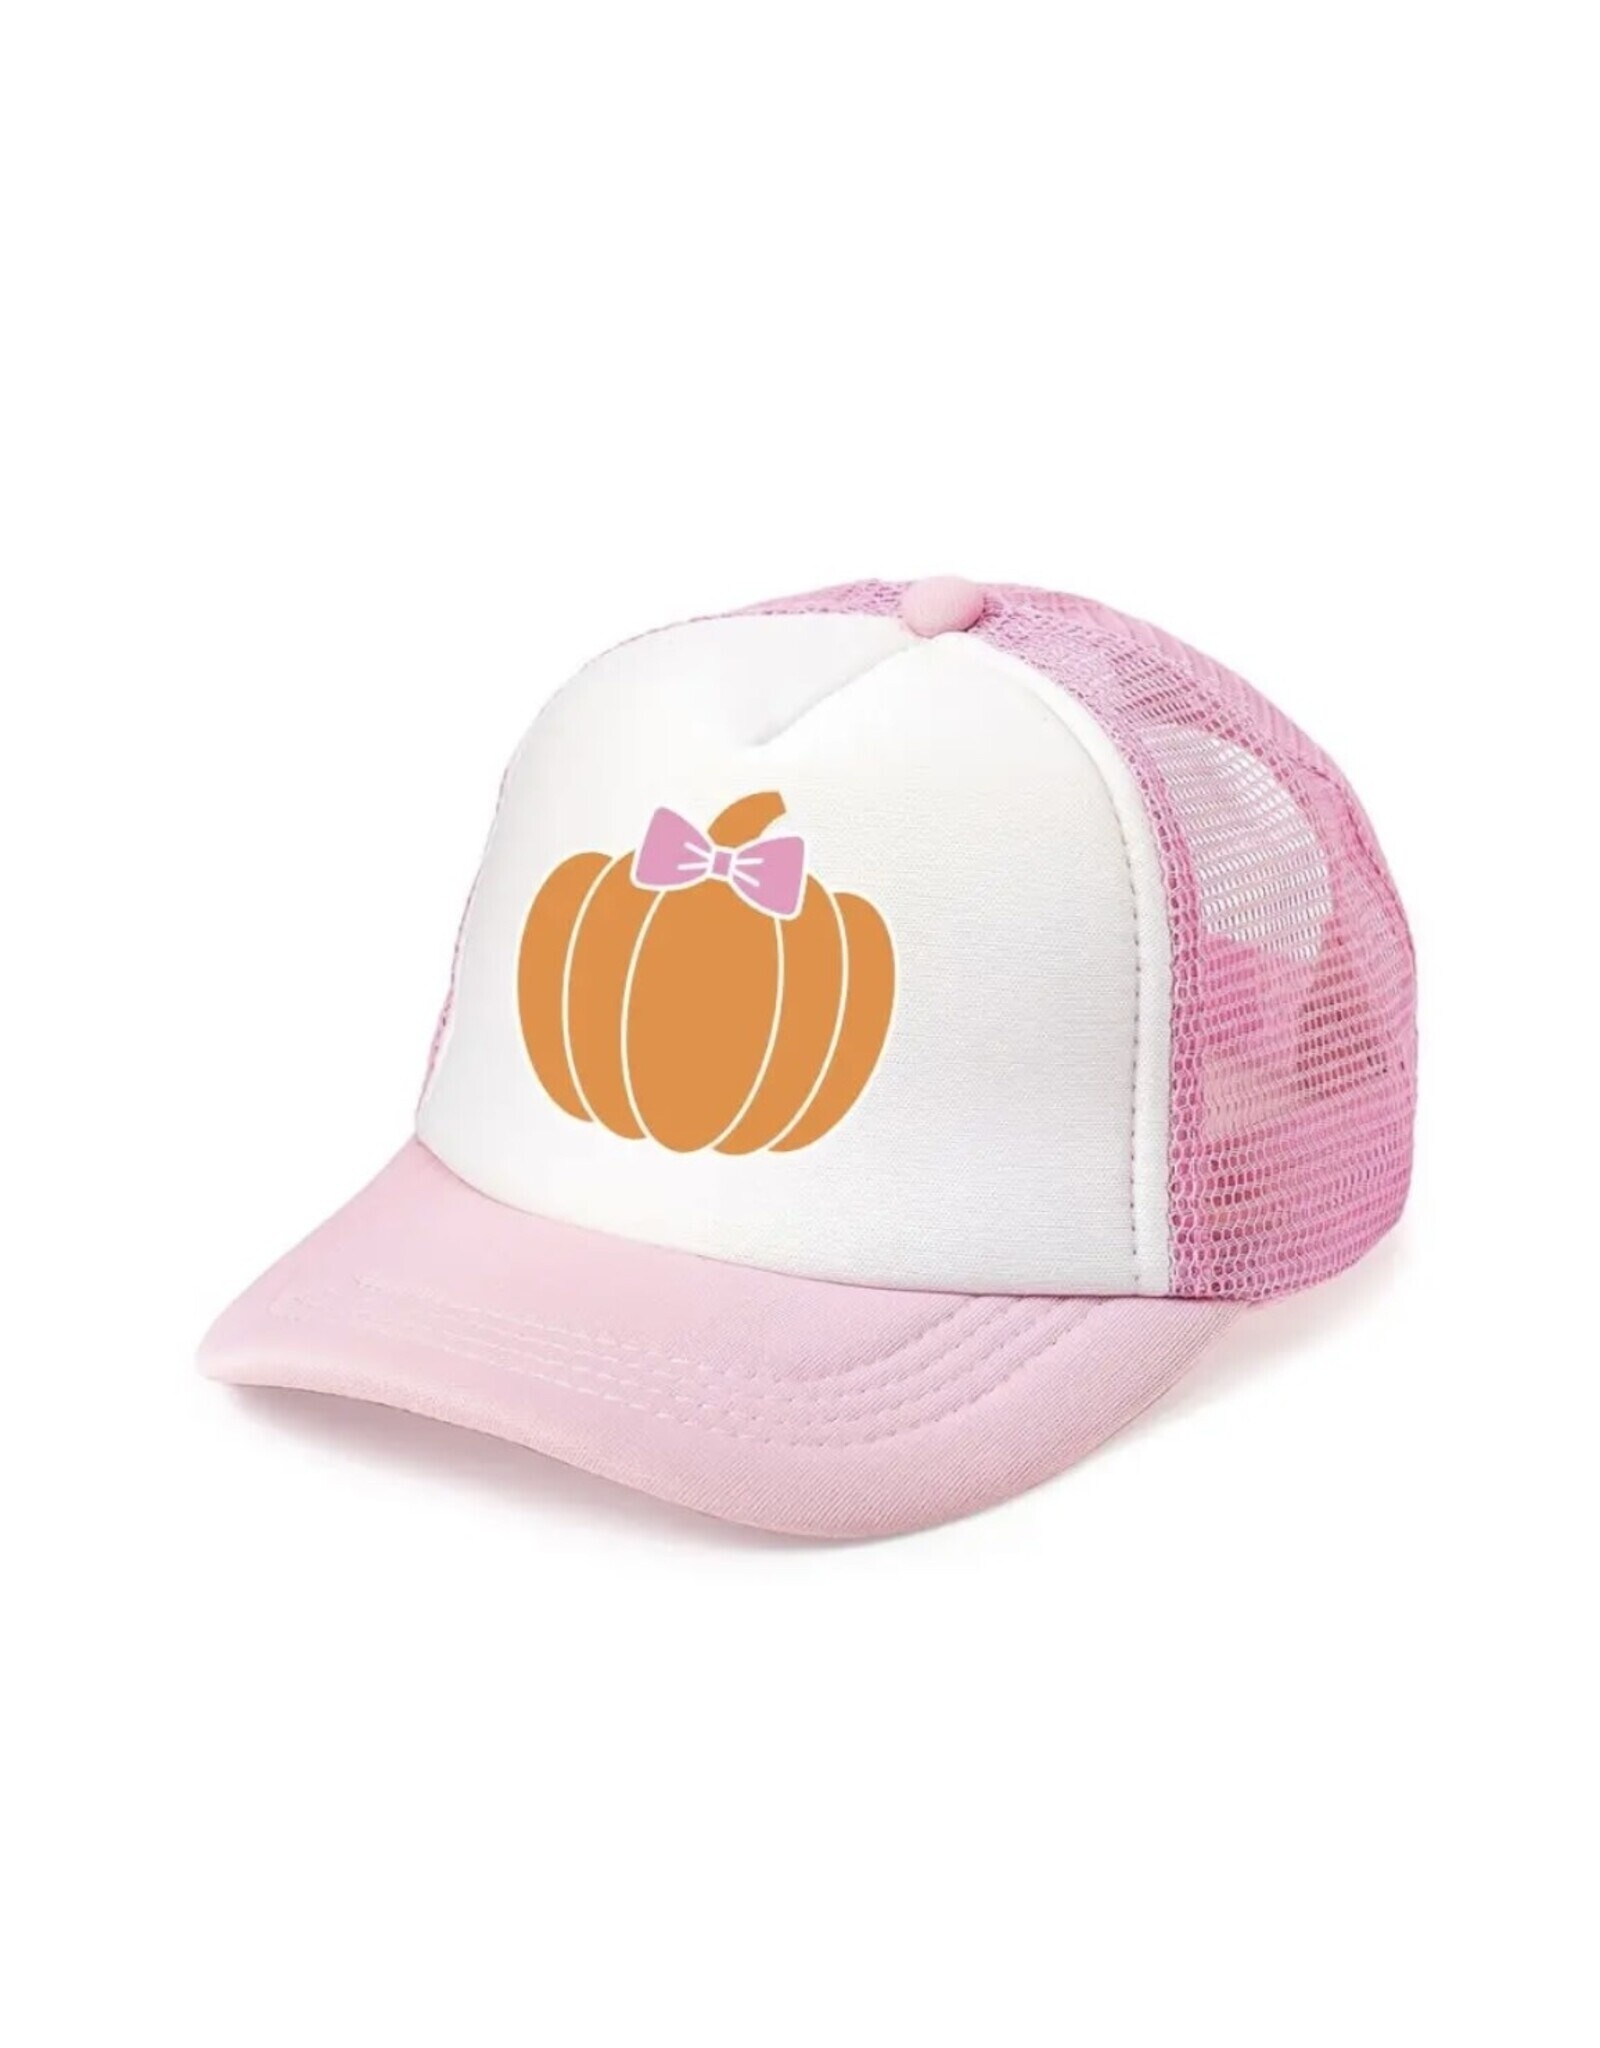 Wink Pumpkin Bow Trucker Hat - Pink/White